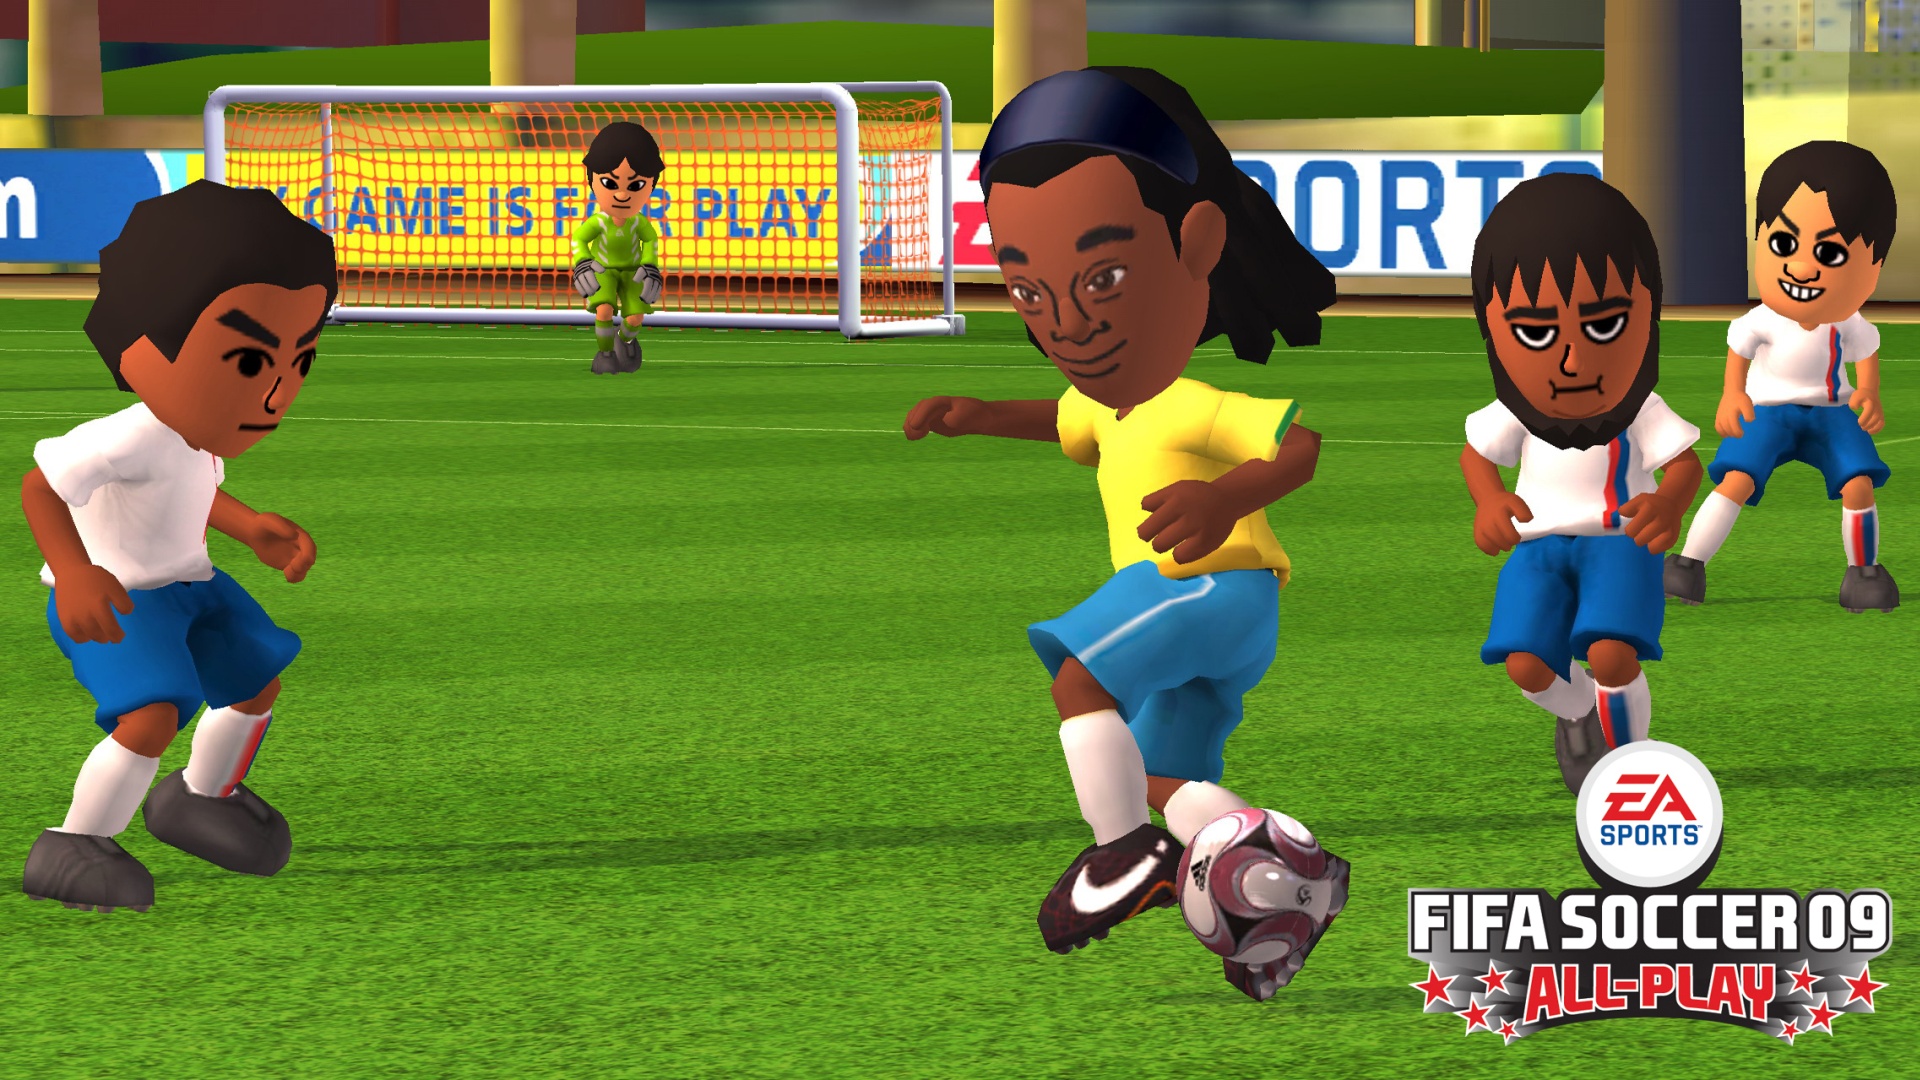 Fifa soccer. FIFA Soccer 09. FIFA 09. FIFA Soccer 9. FIFA Soccer игра 22.